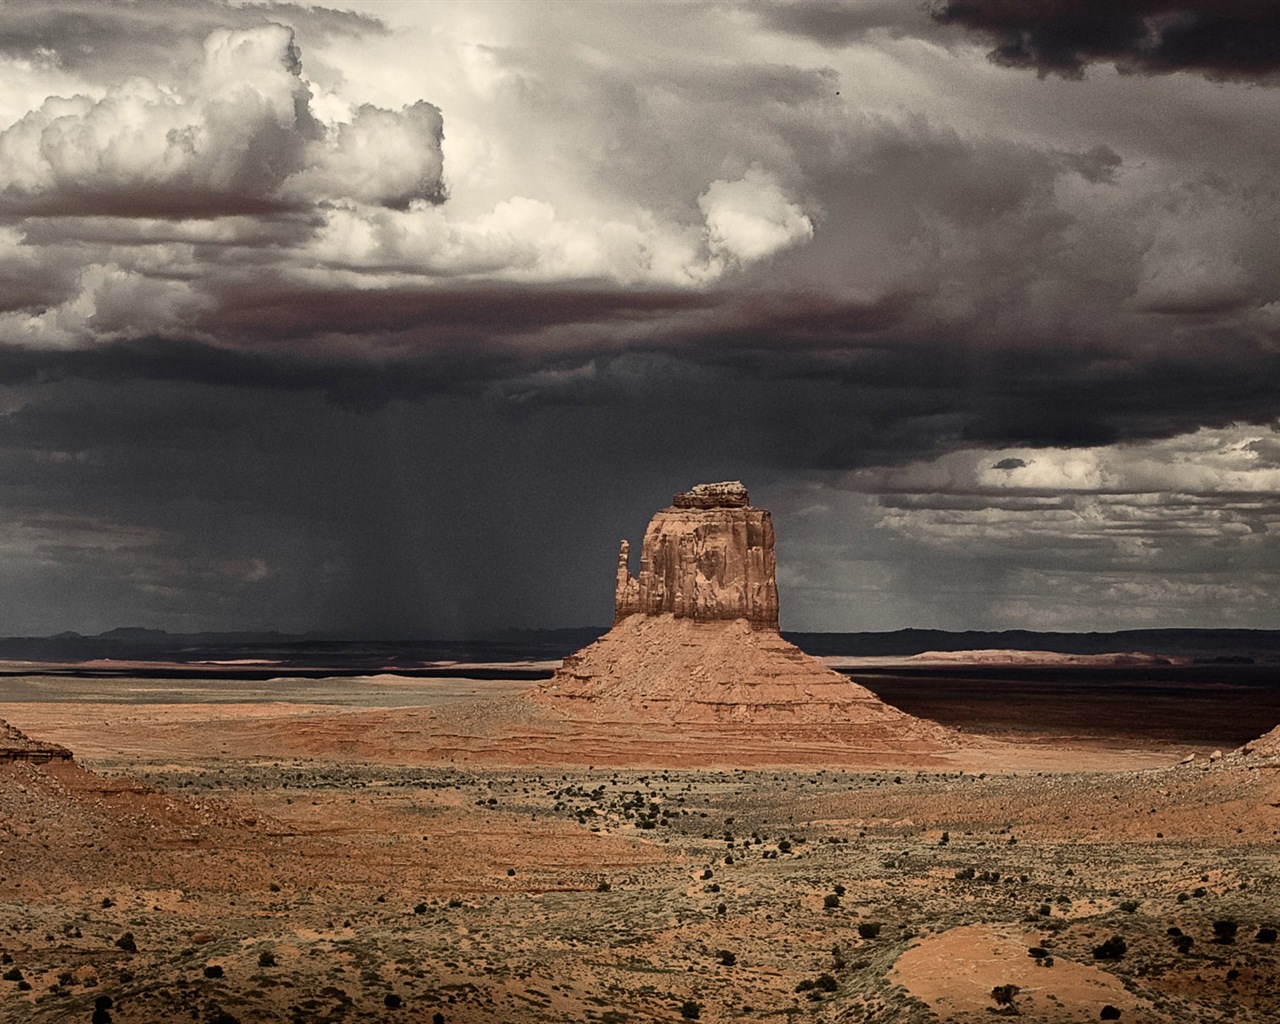 Les déserts chauds et arides, de Windows 8 fonds d'écran widescreen panoramique #7 - 1280x1024